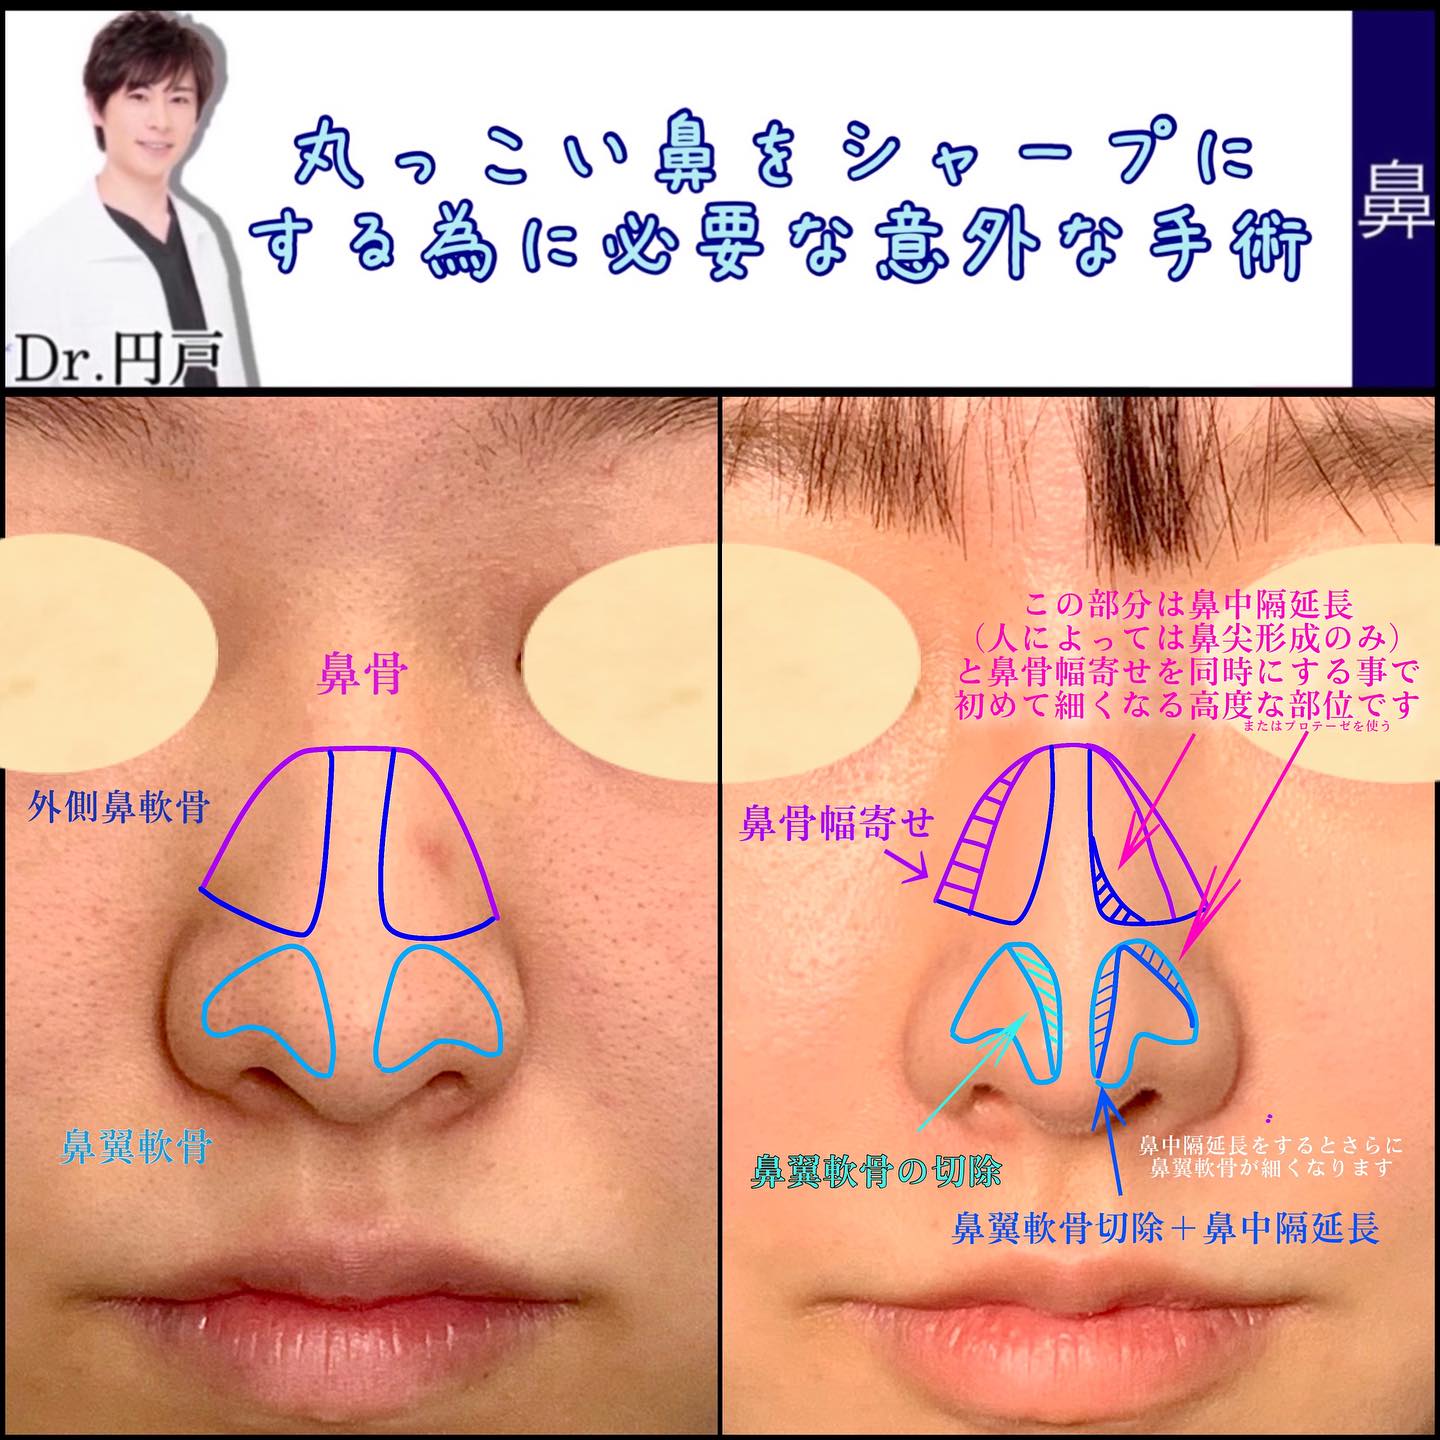 鼻中隔延長の症例写真の図解